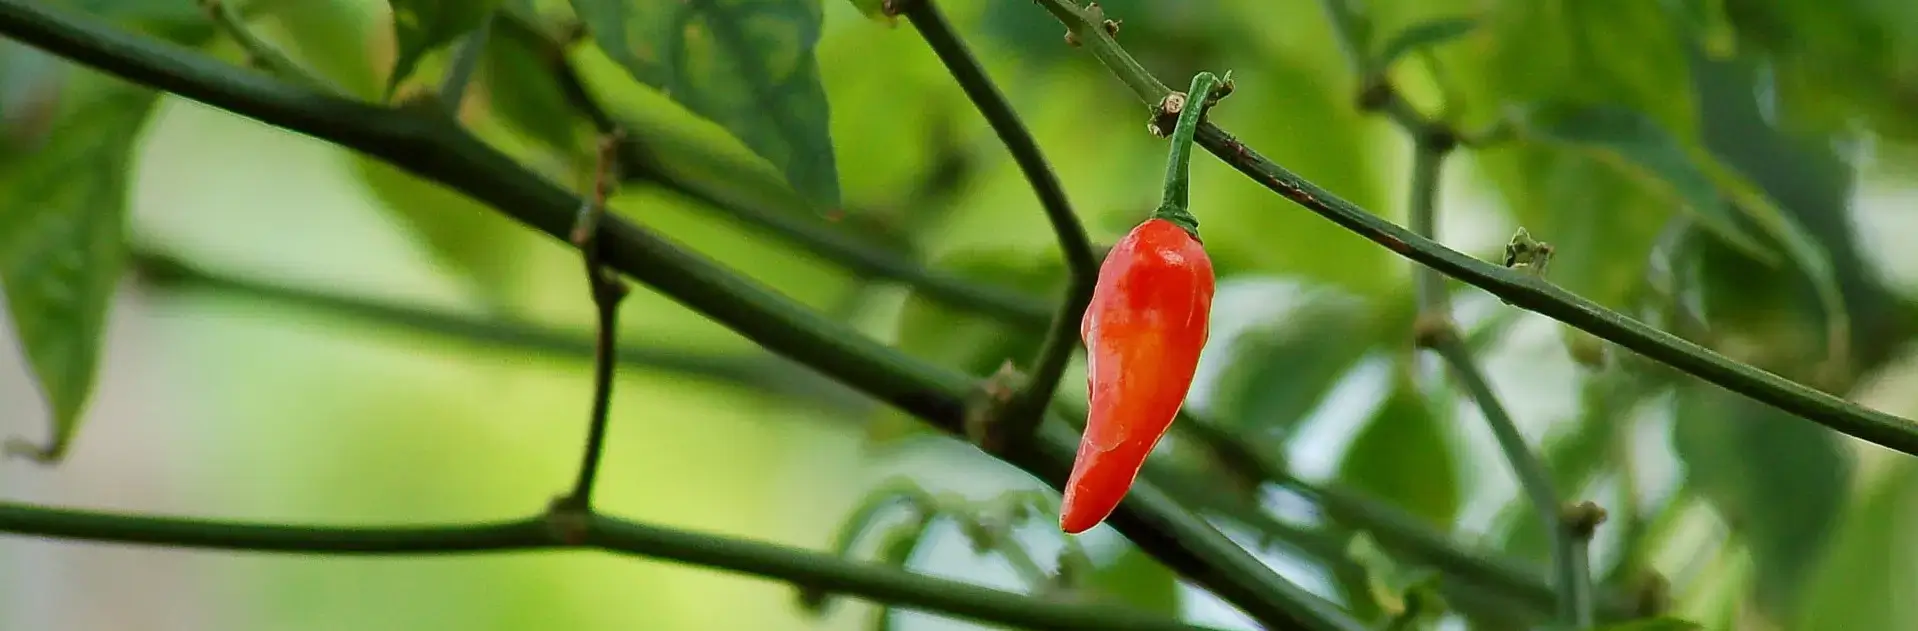 Kaleeswari Farm red pepper